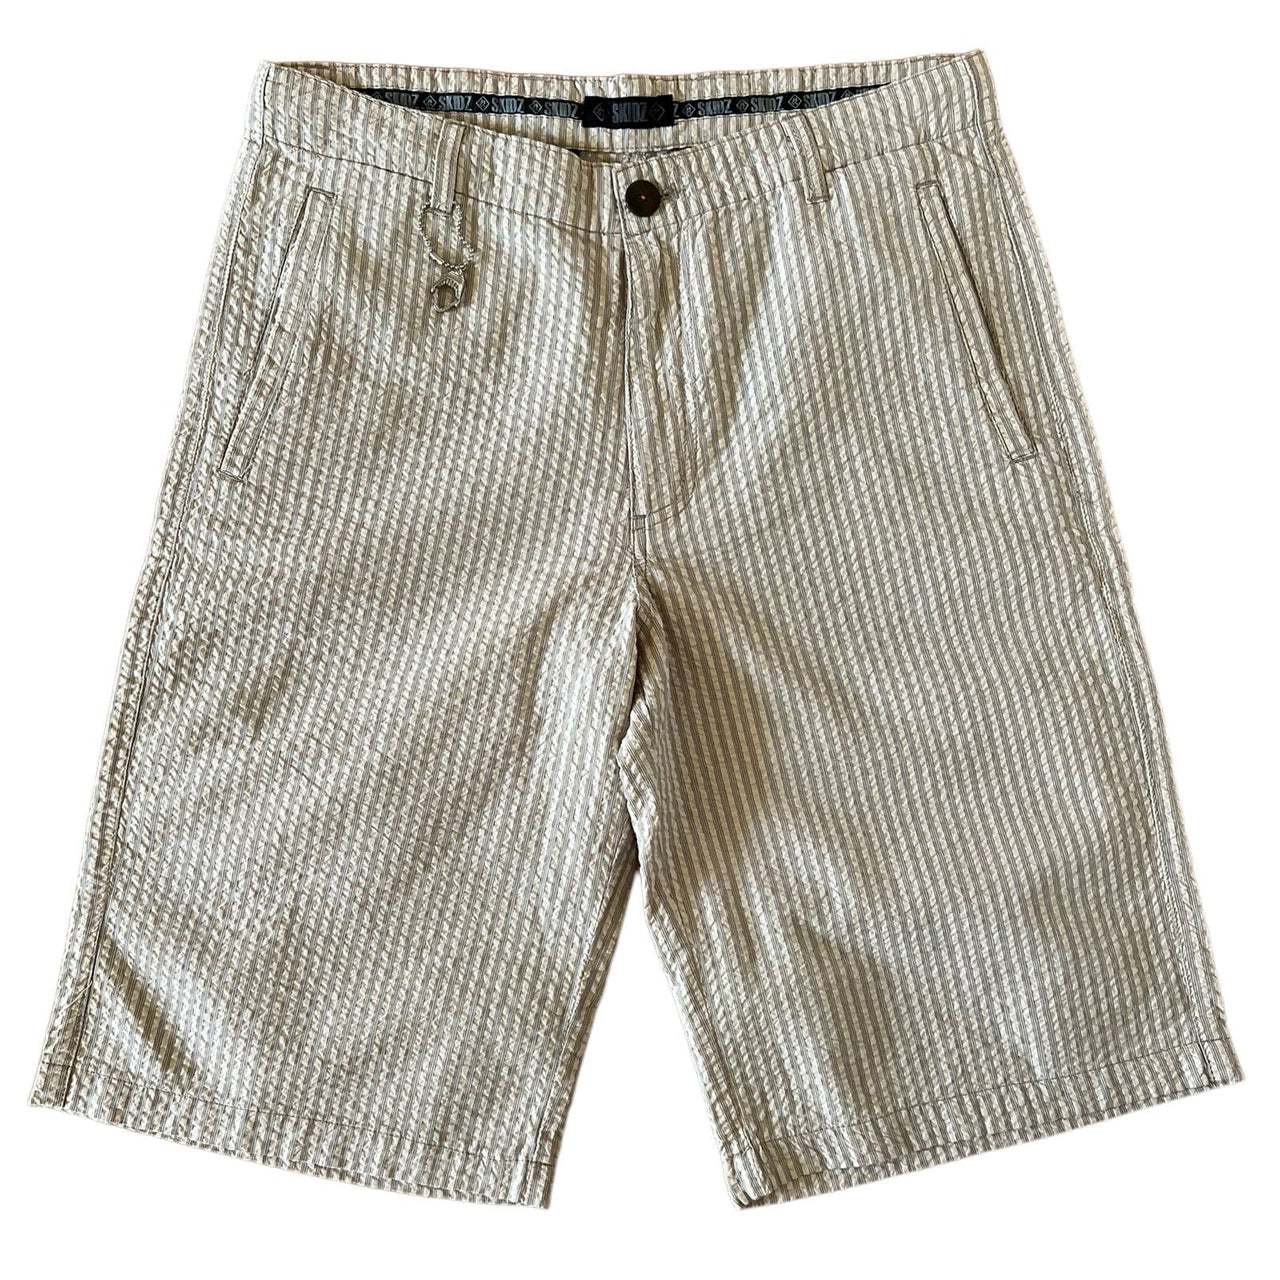 SKIDZ Shorts Seersucker Shorts Vol2 - Natural Striped